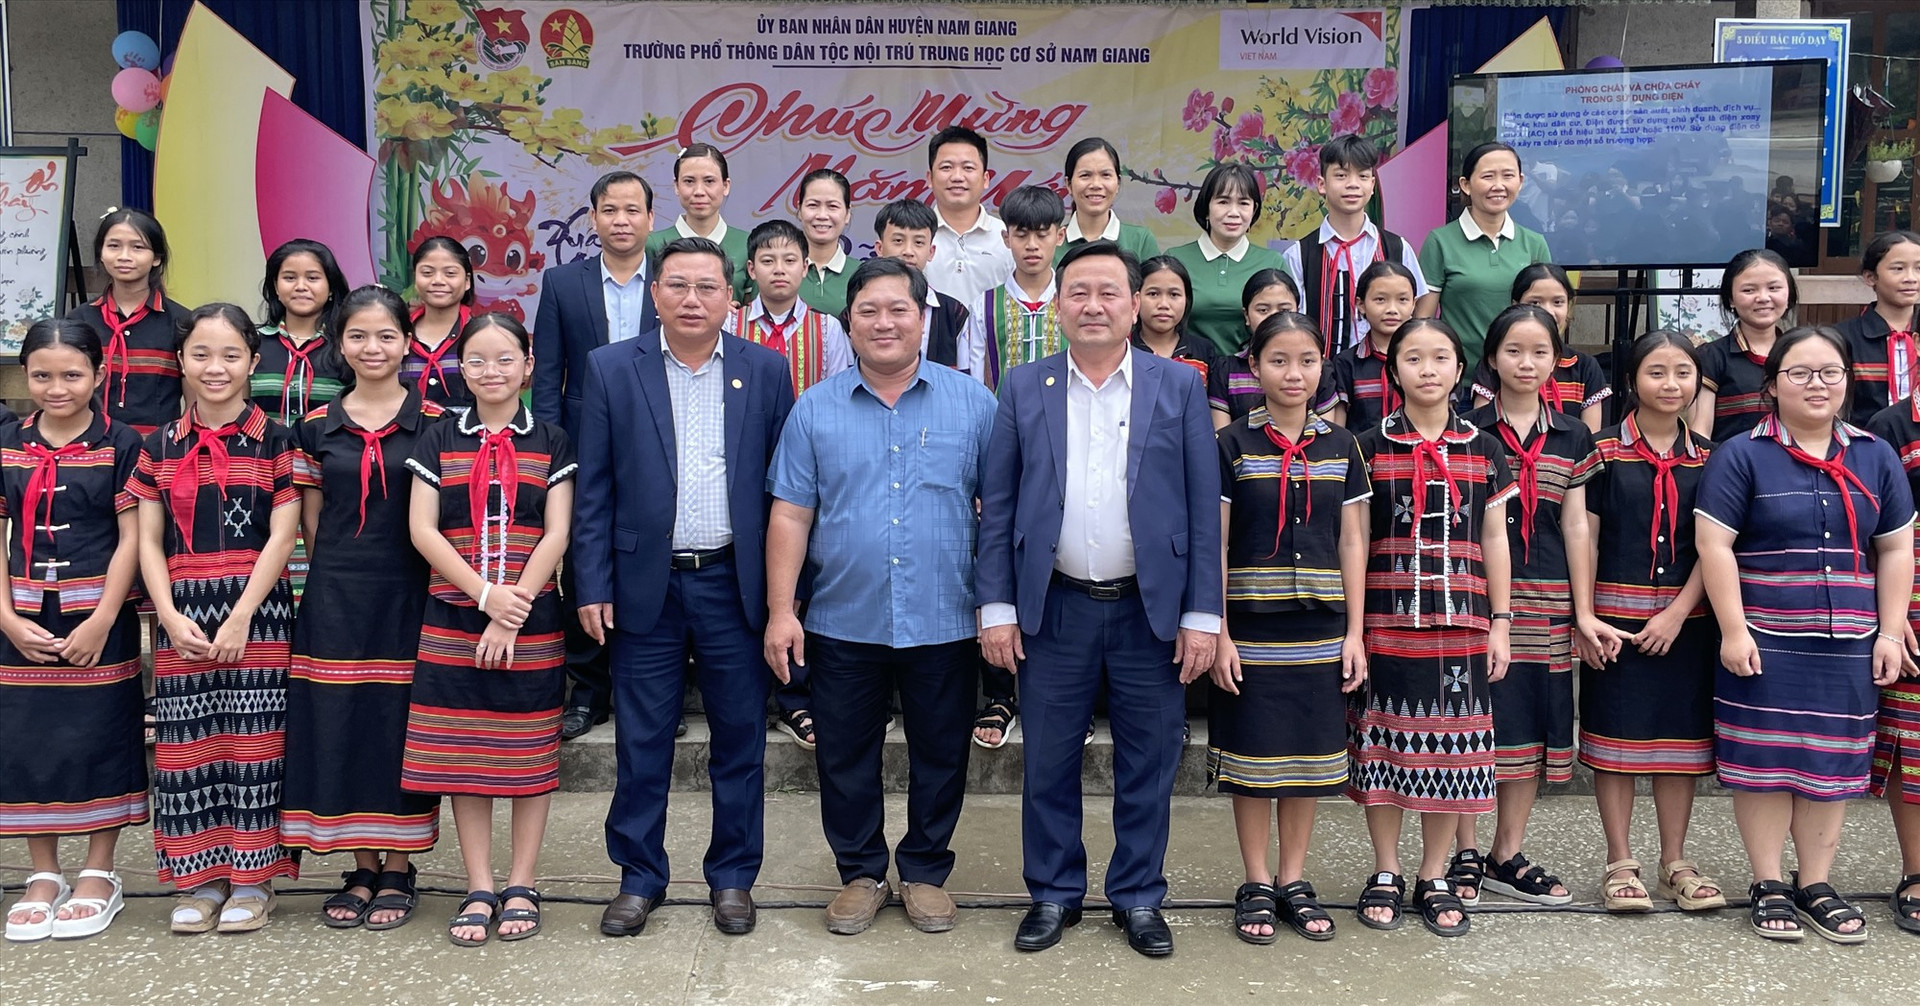 Đoàn công tác chụp hình lưu niệm cùng tập thể giáo viên, học sinh trường Phổ thông Dân tộc nội trú THCS Nam Giang.